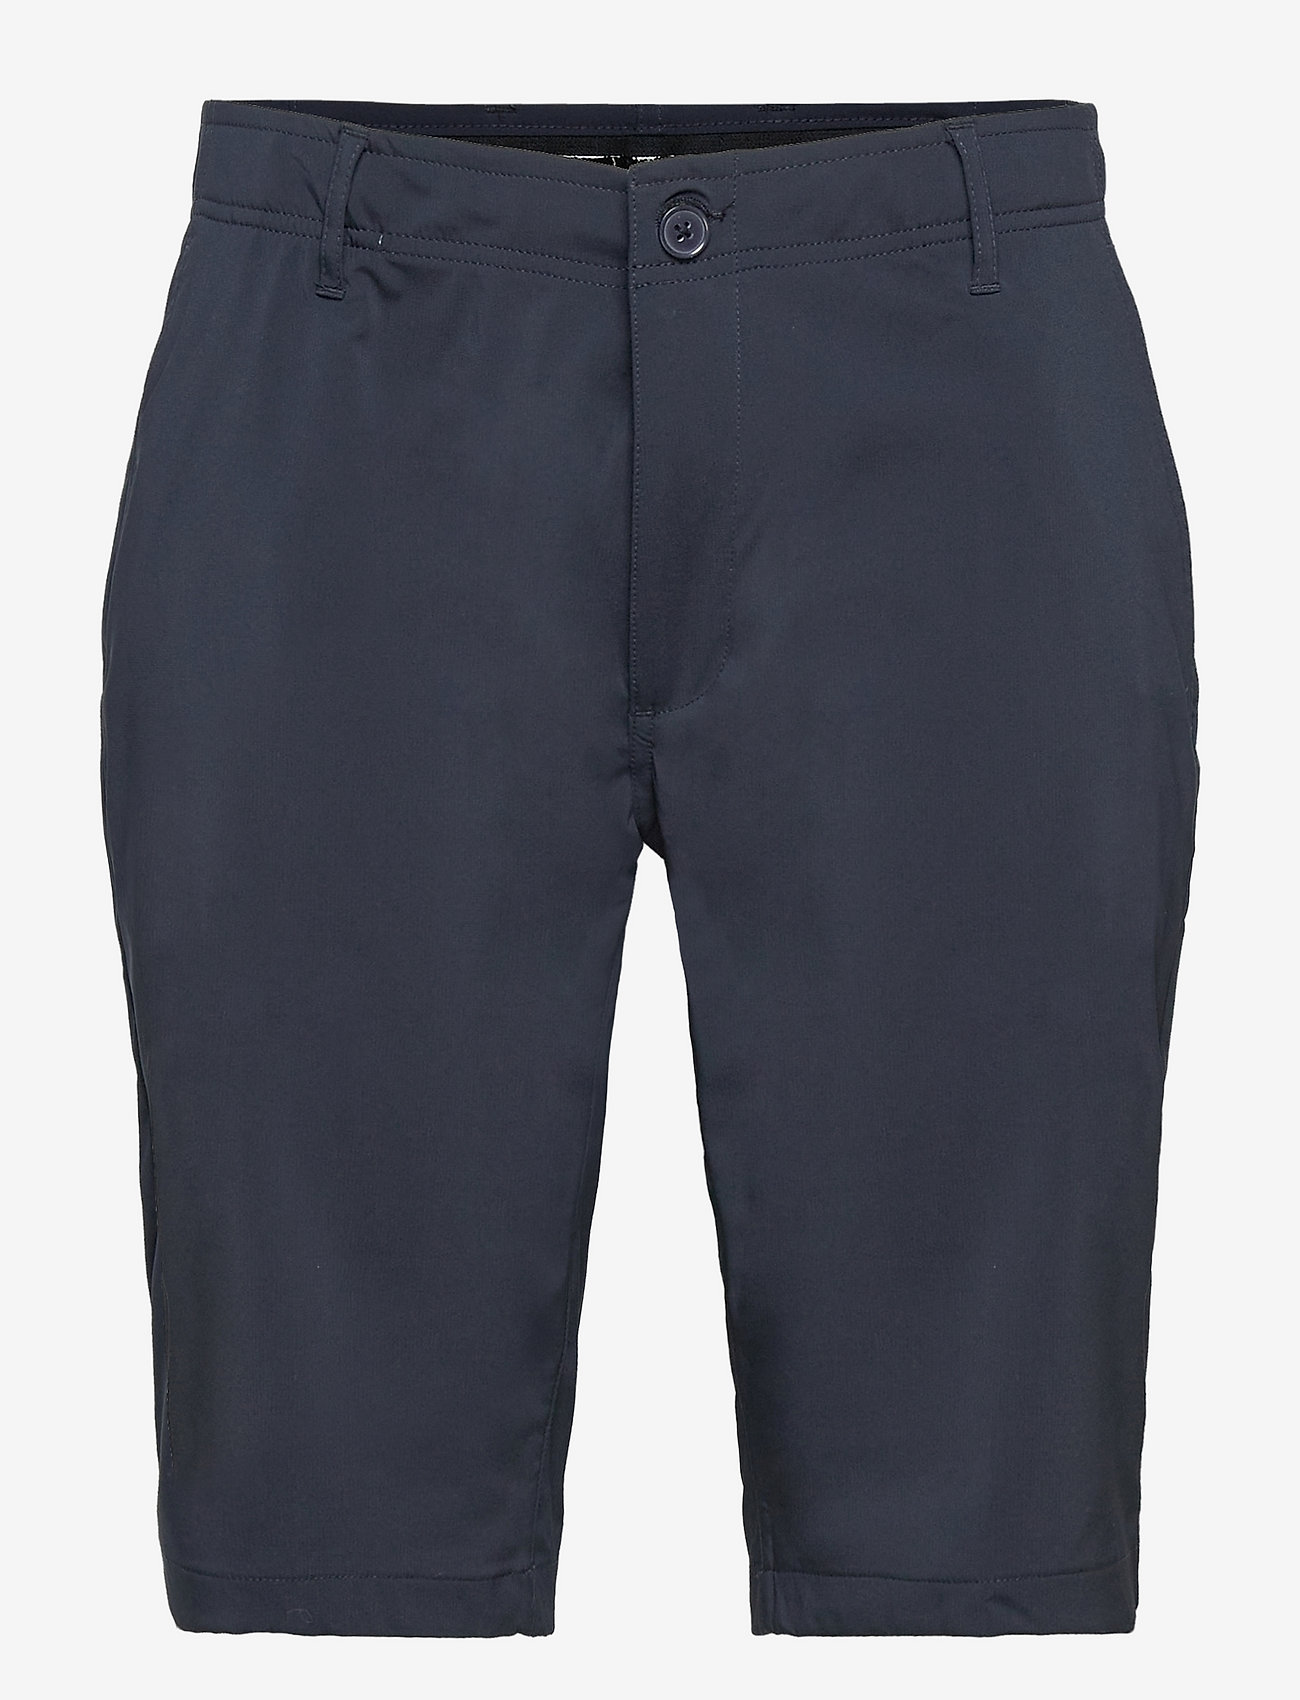 Abacus - Men Cleek flex shorts - golf shorts - navy - 0